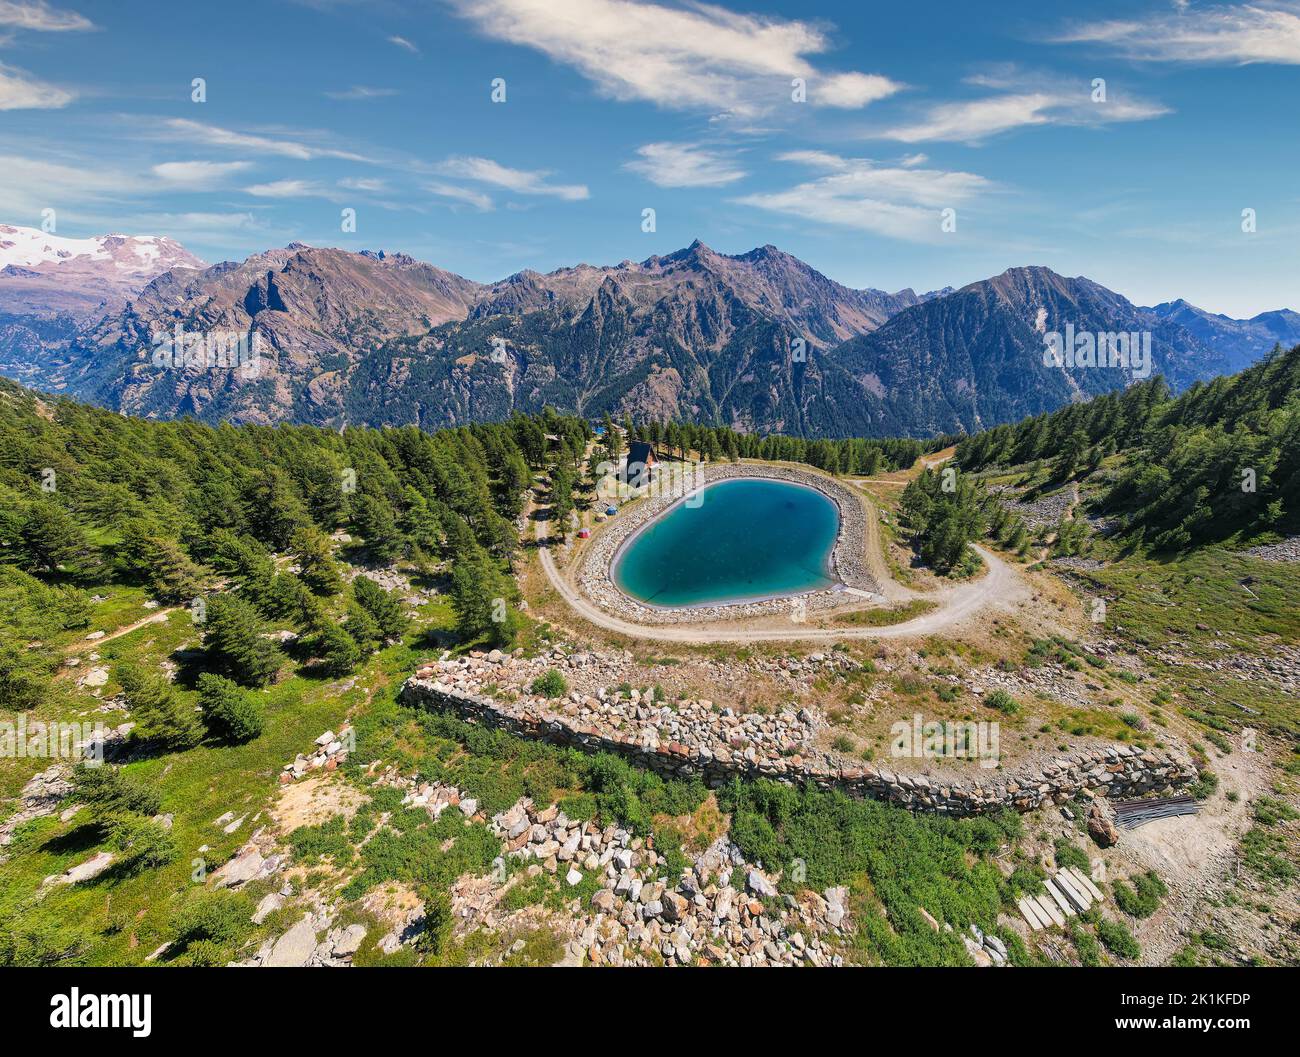 Veduta aerea di un lago alpino, Gressoney, Valle d'Aosta, Italia Foto Stock